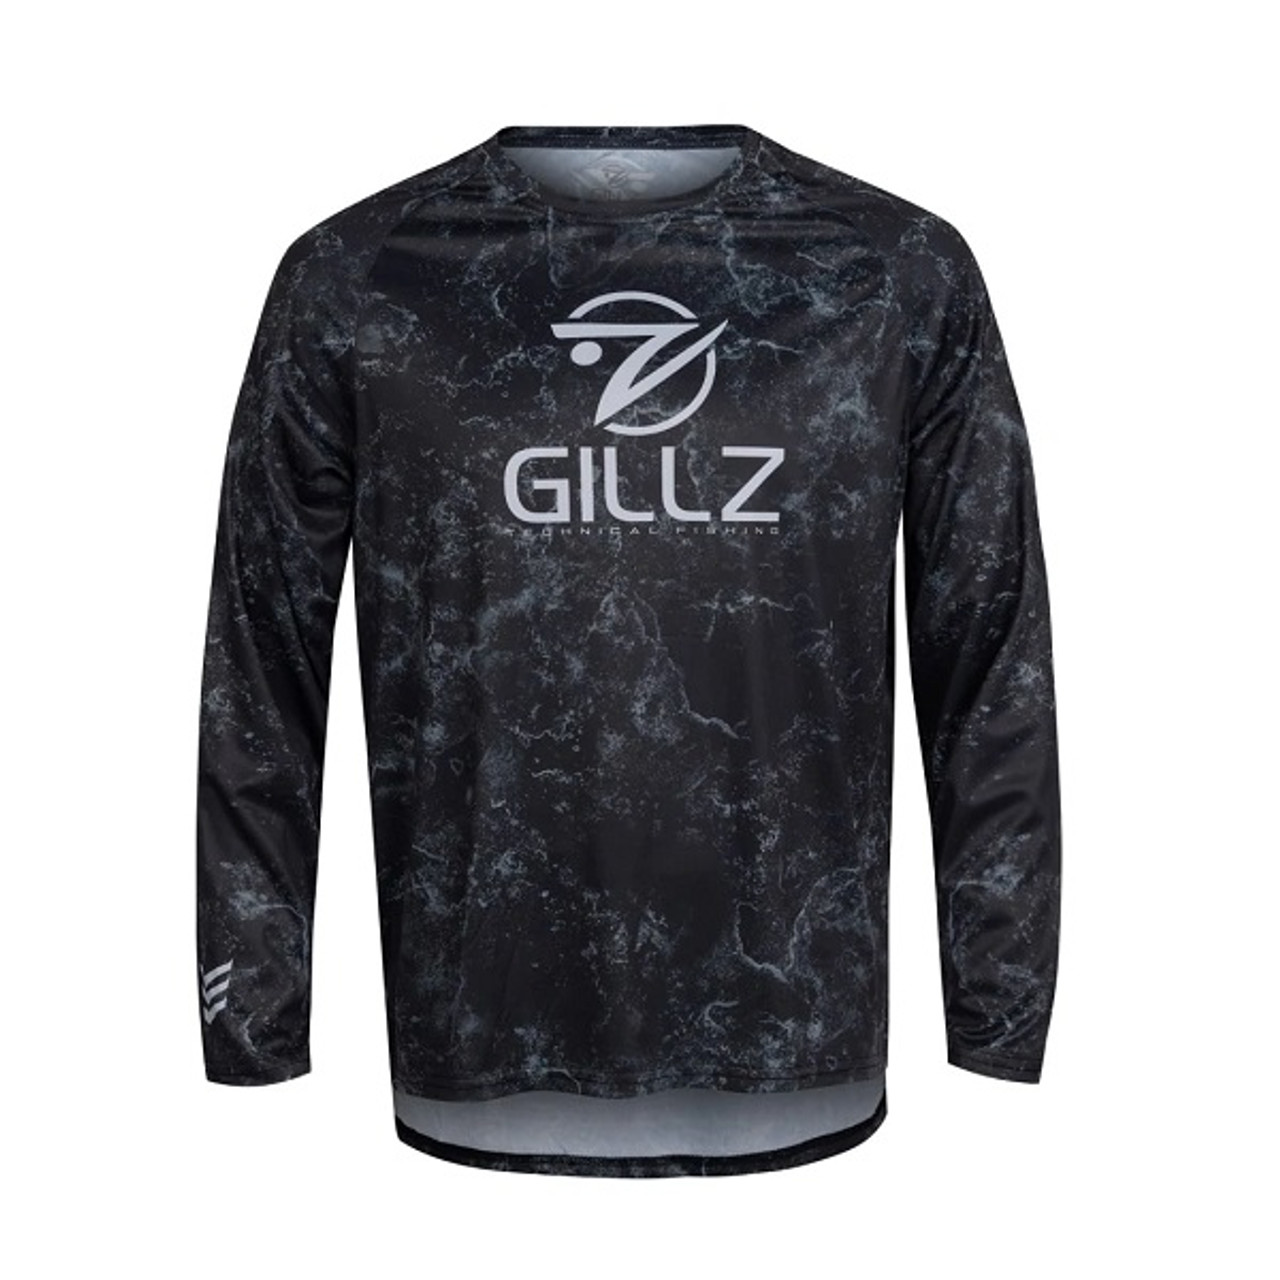 Gillz Contender Series Long-Sleeve Shirt for Men - Jet Set - S